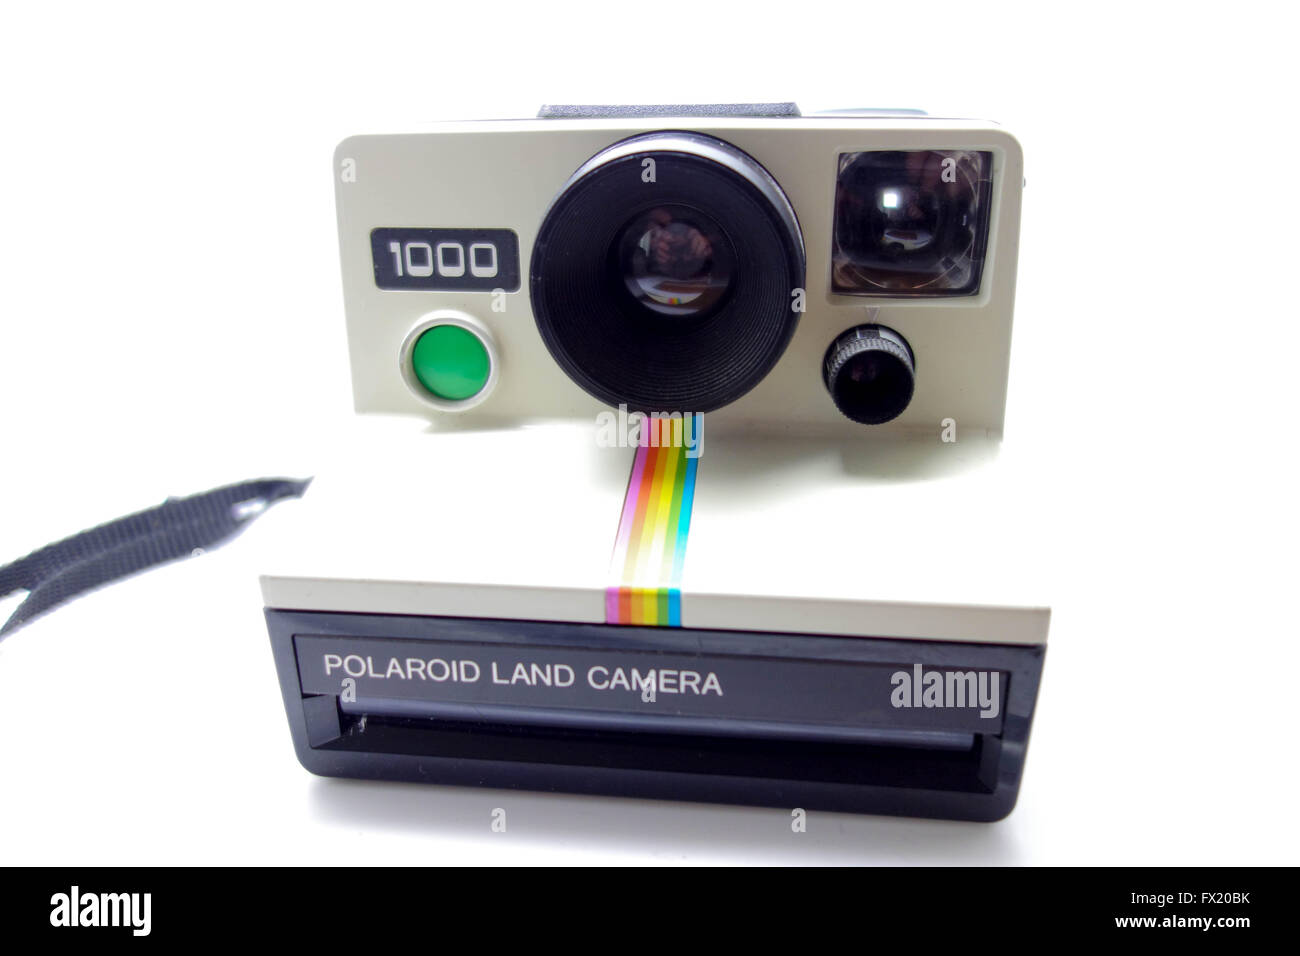 polaroid 3000 - land camera boton verde ¡¡funci - Compra venta en  todocoleccion